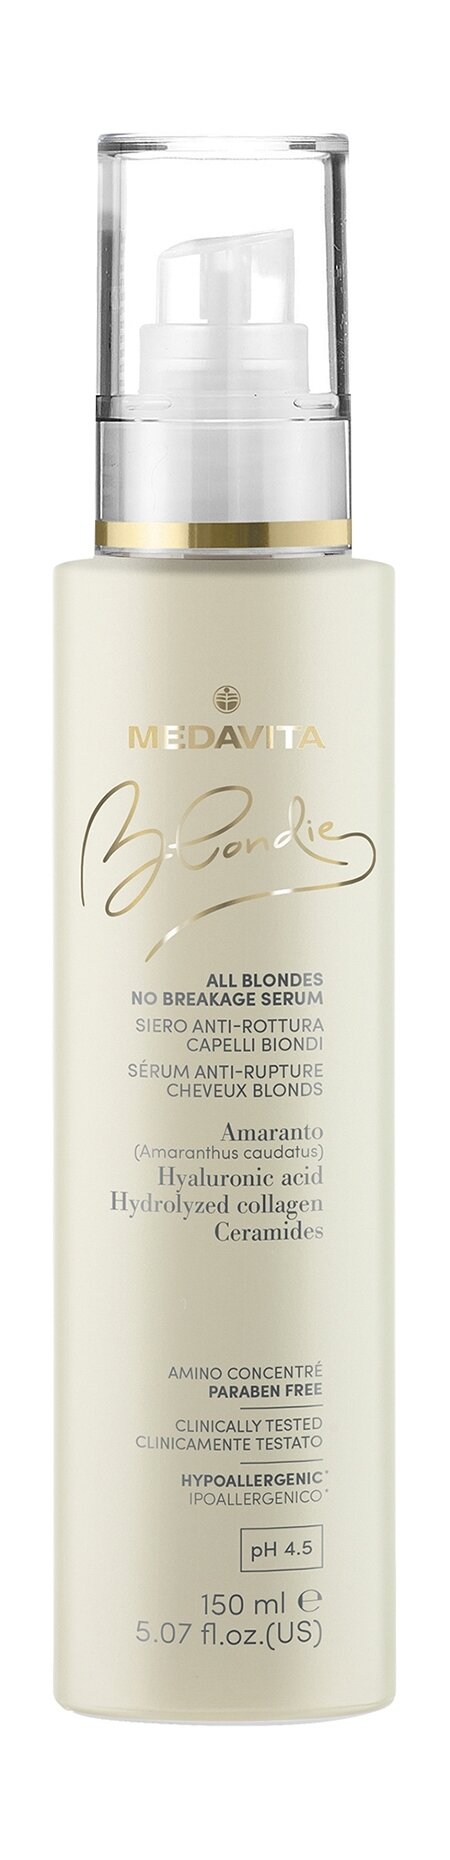 MEDAVITA Blondie Сыворотка против ломкости волос увлажняющая уплотняющая, 150 мл